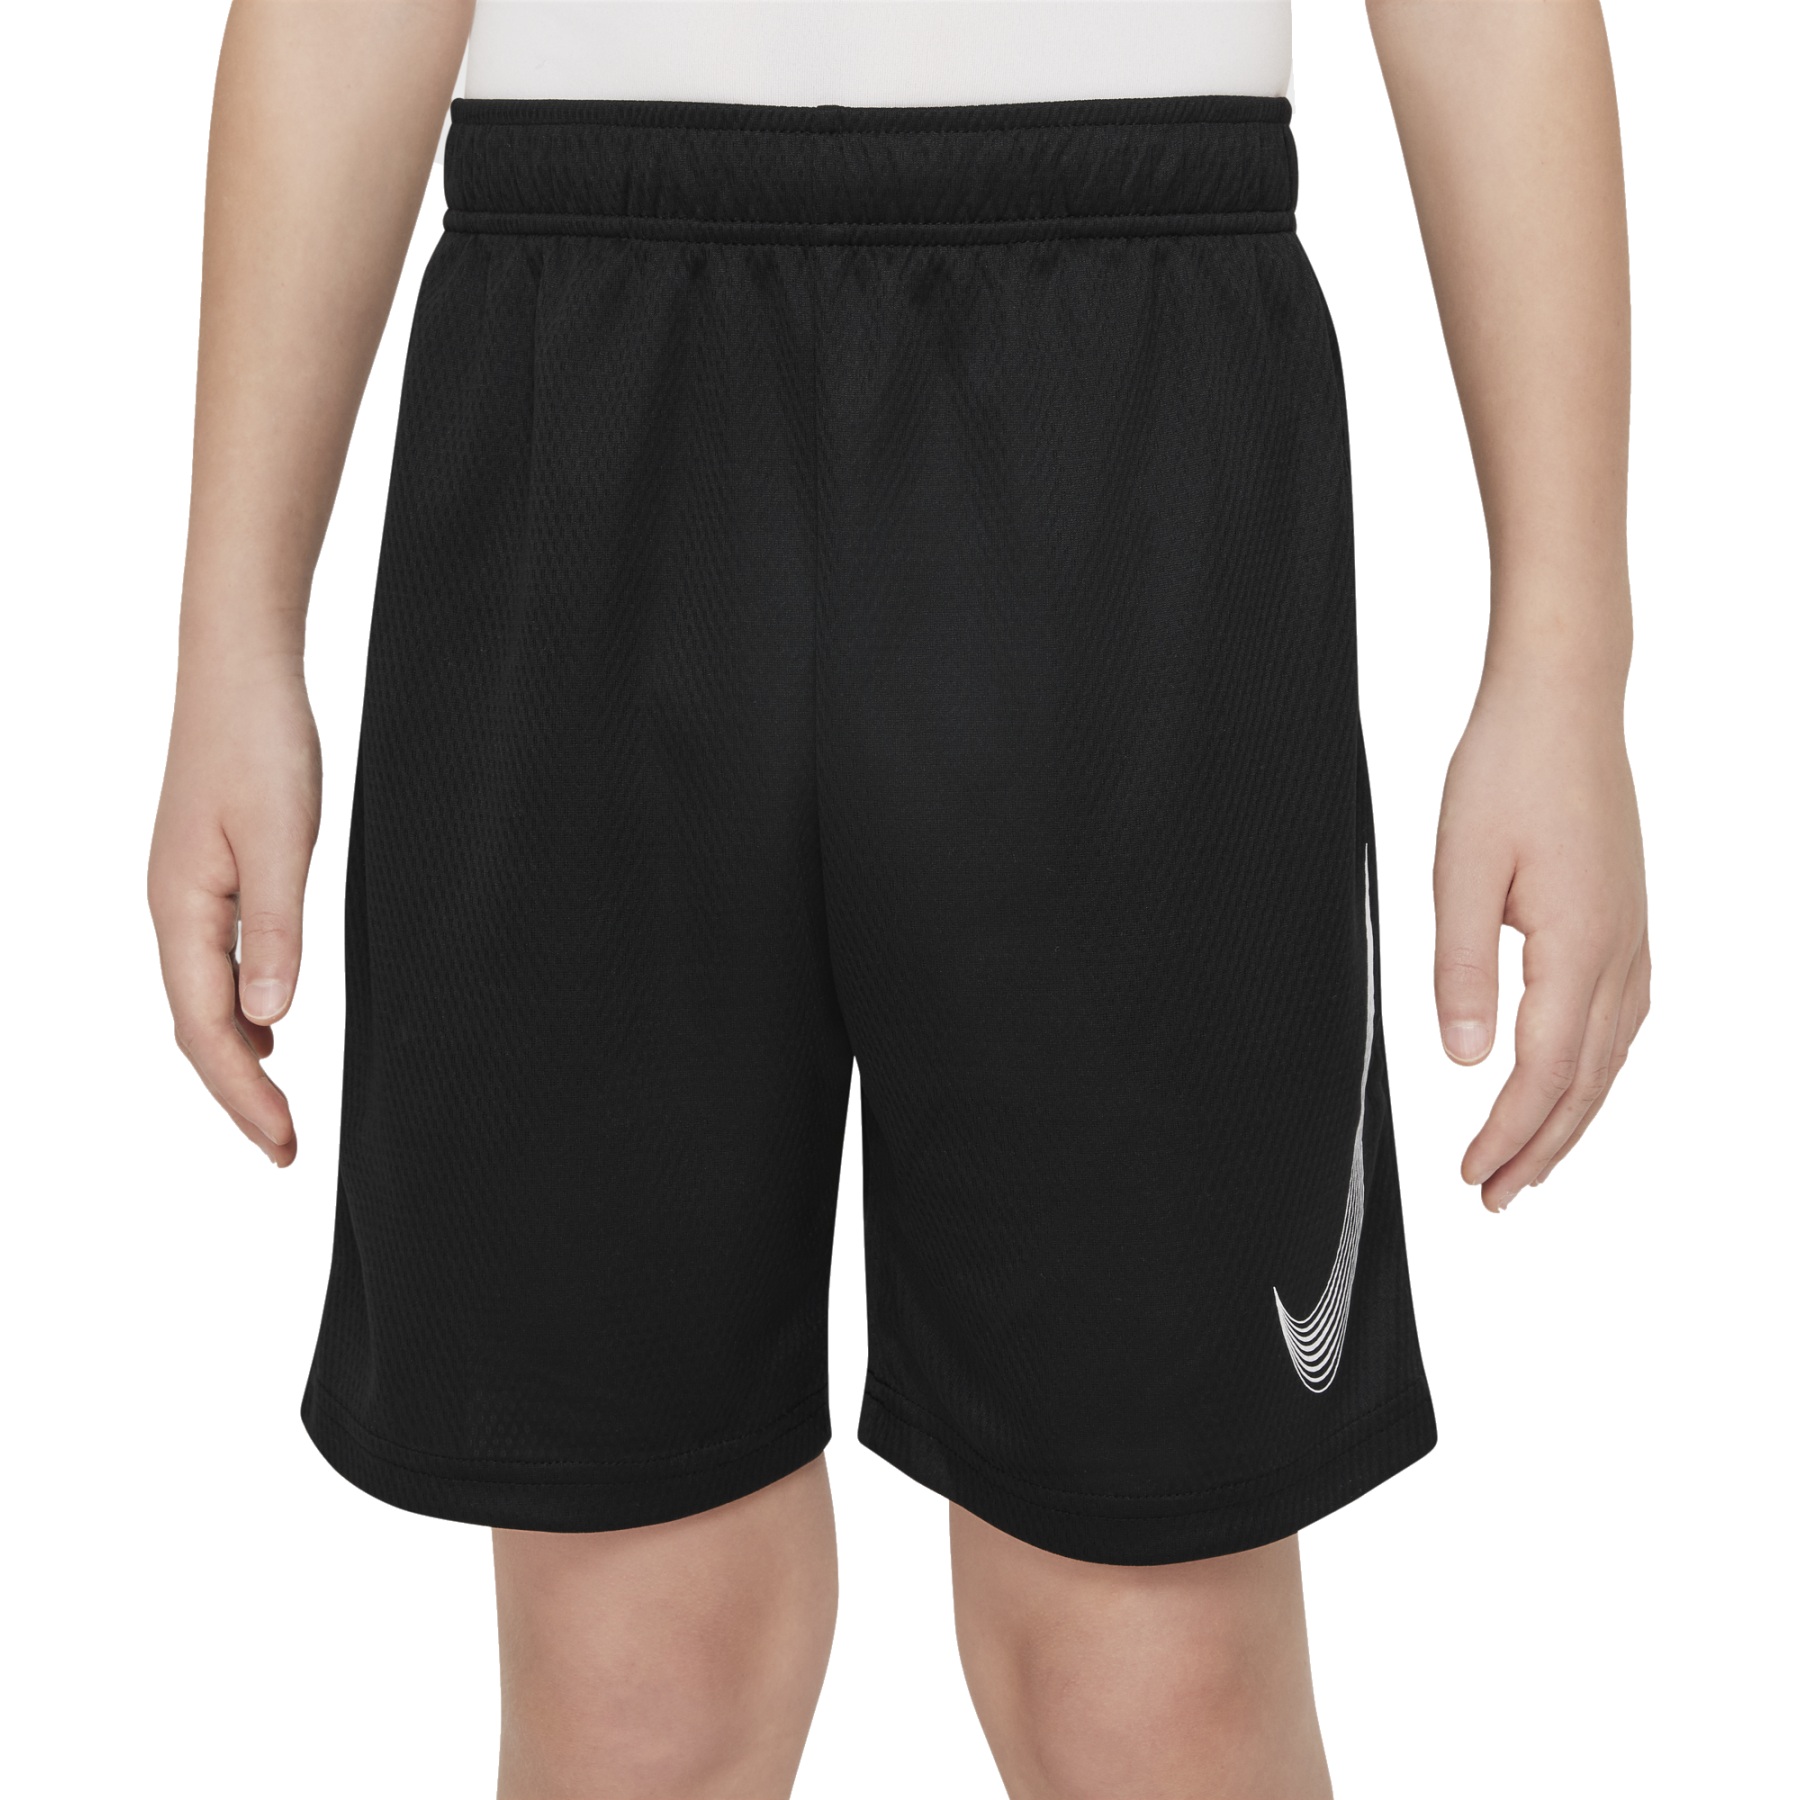 Productfoto van Nike Dri-FIT Trainingsshorts Kinderen - black/white DM8537-010